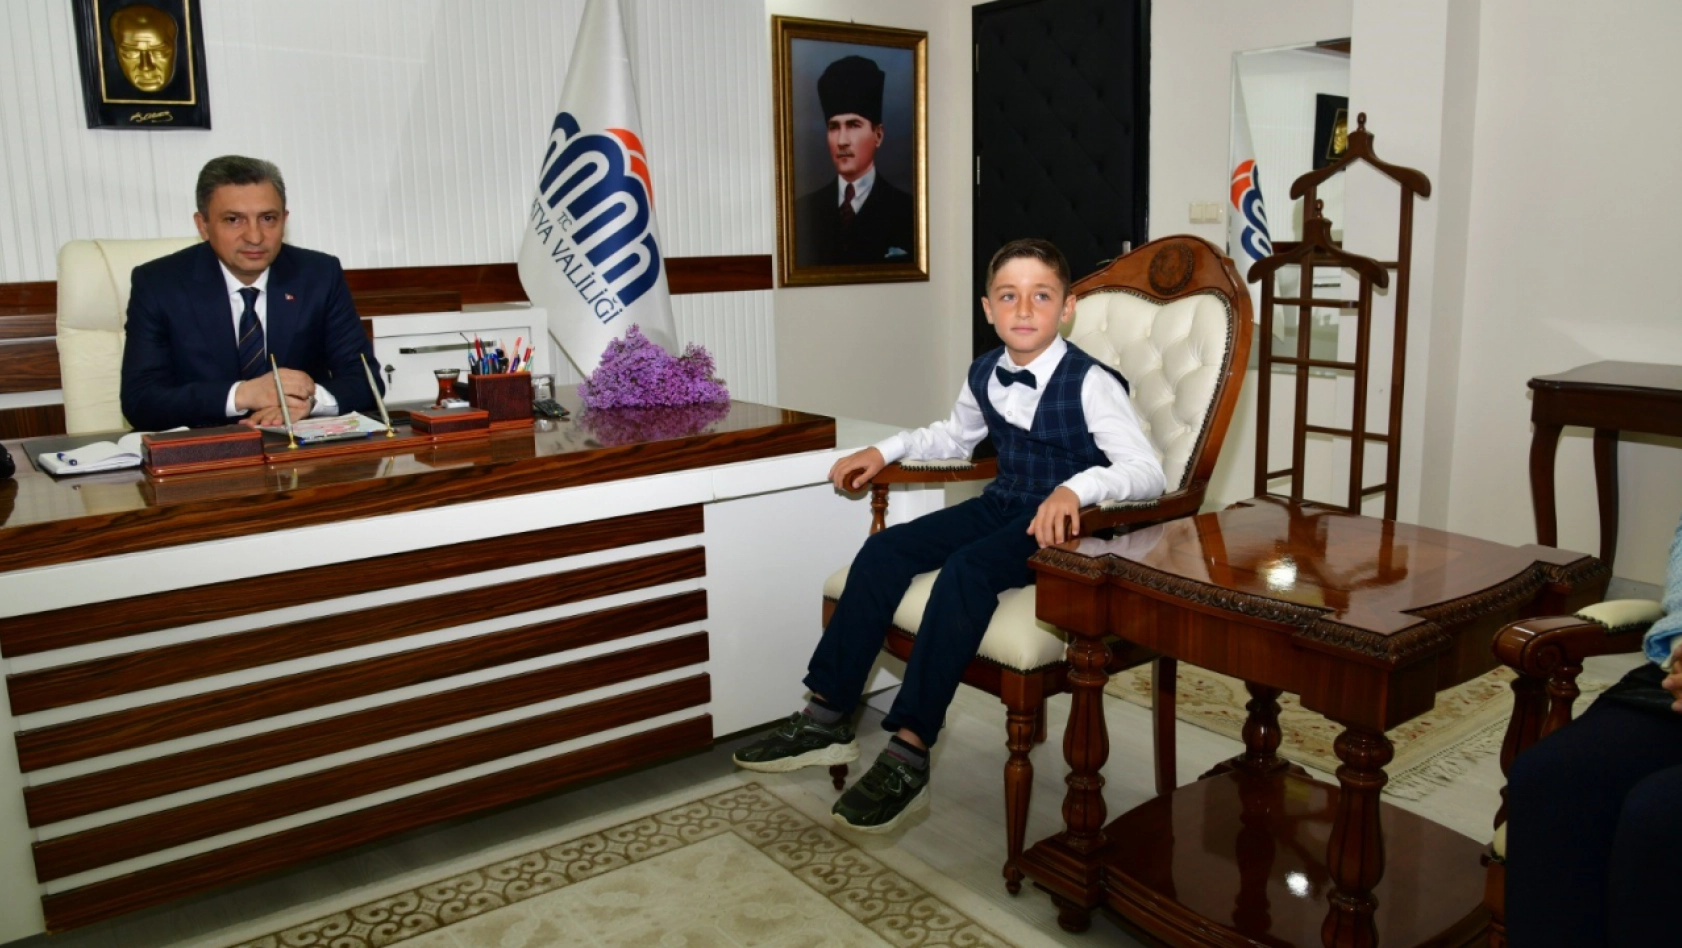 Malatya'nın temsili valisi olan Tarık Boztepe'den deprem duyarlılığı